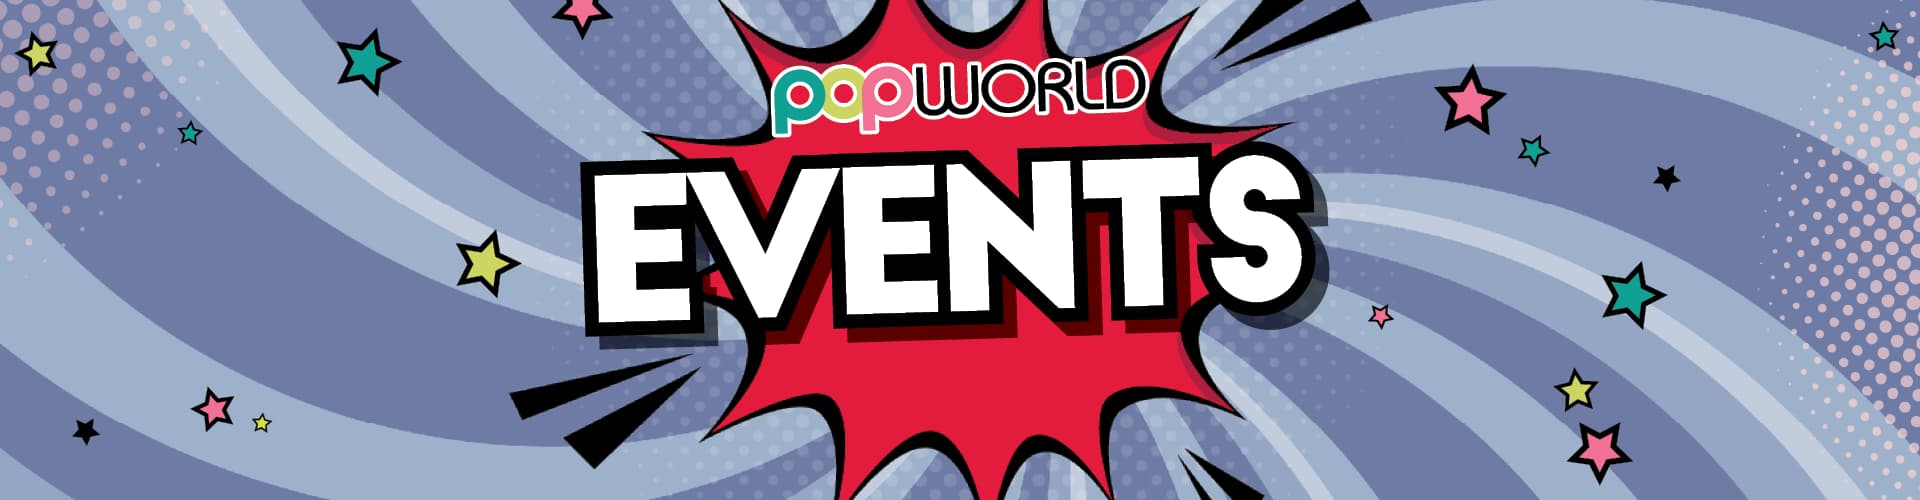 Events at Popworld Portsmouth